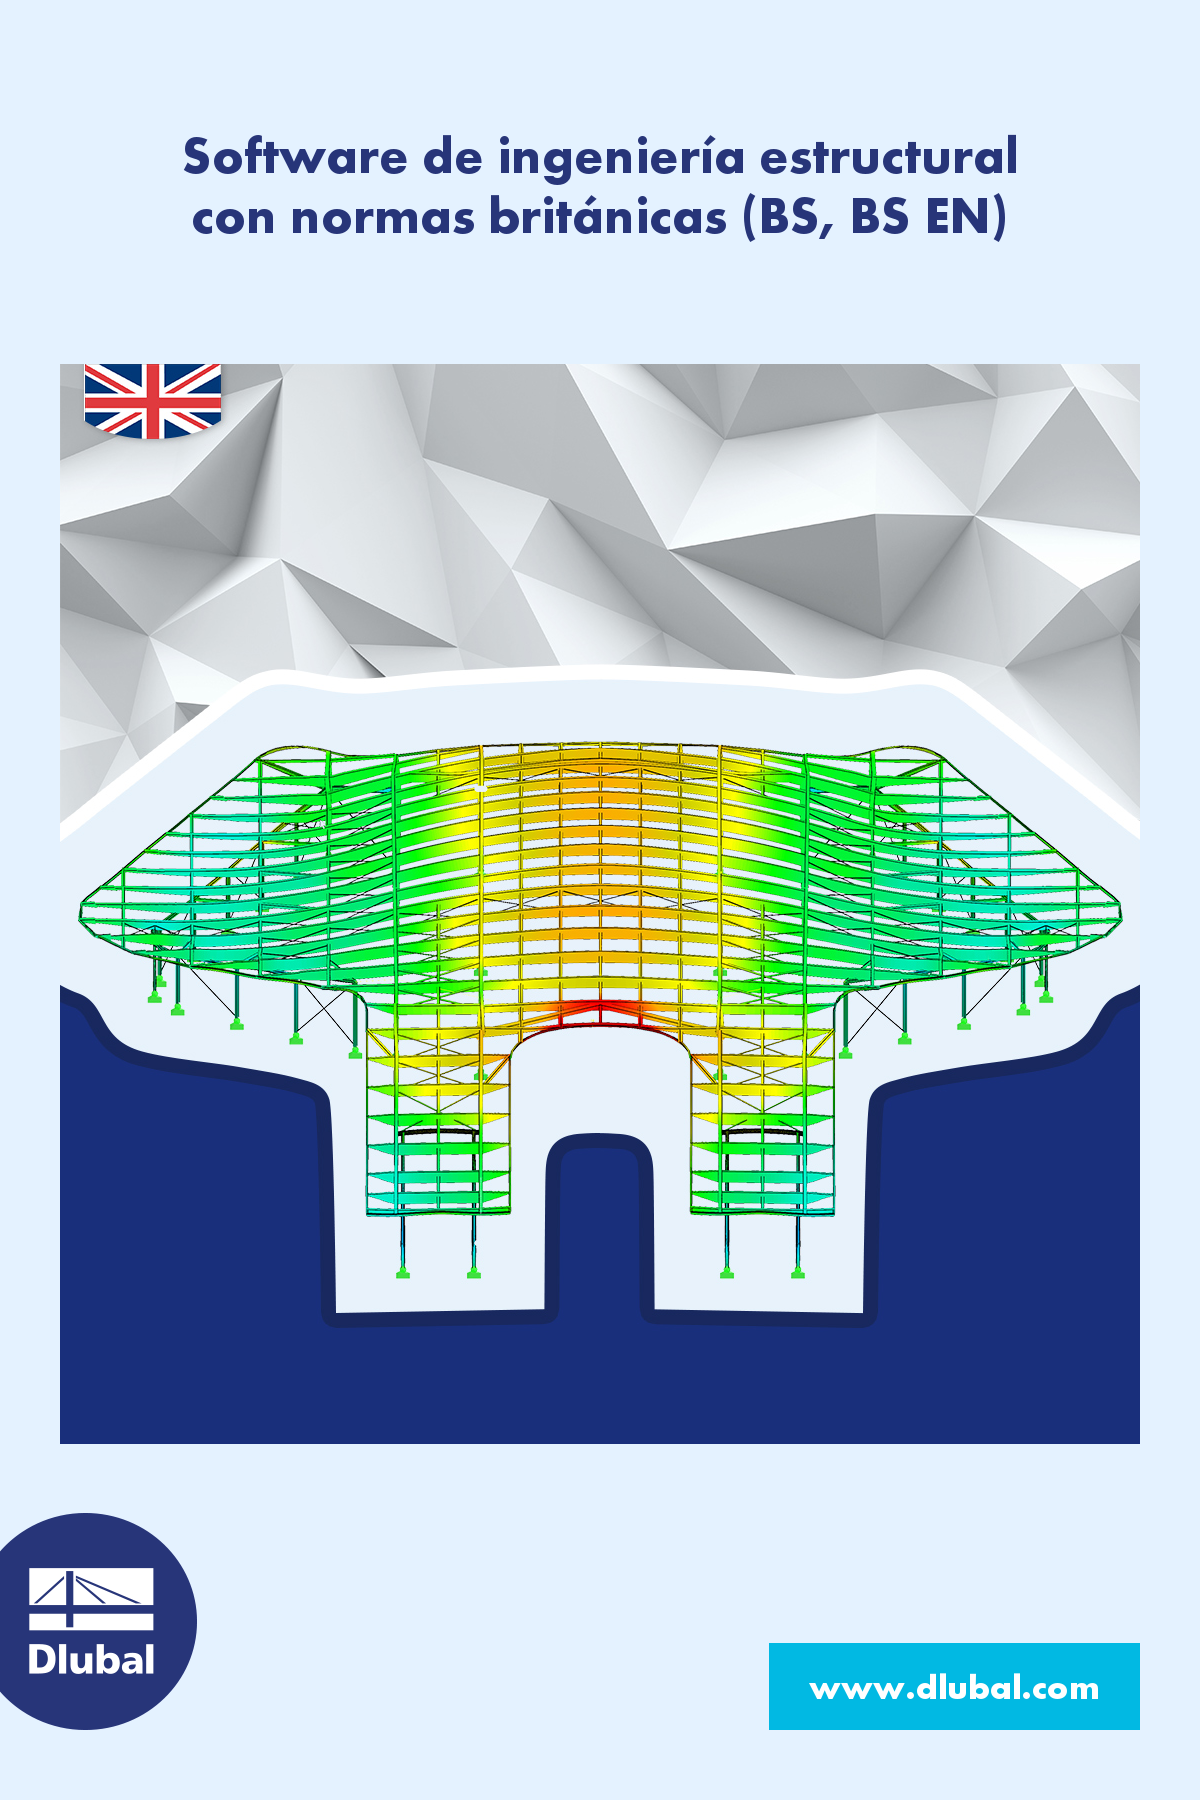 Software de ingeniería estructural\n con normas británicas (BS, BS EN)